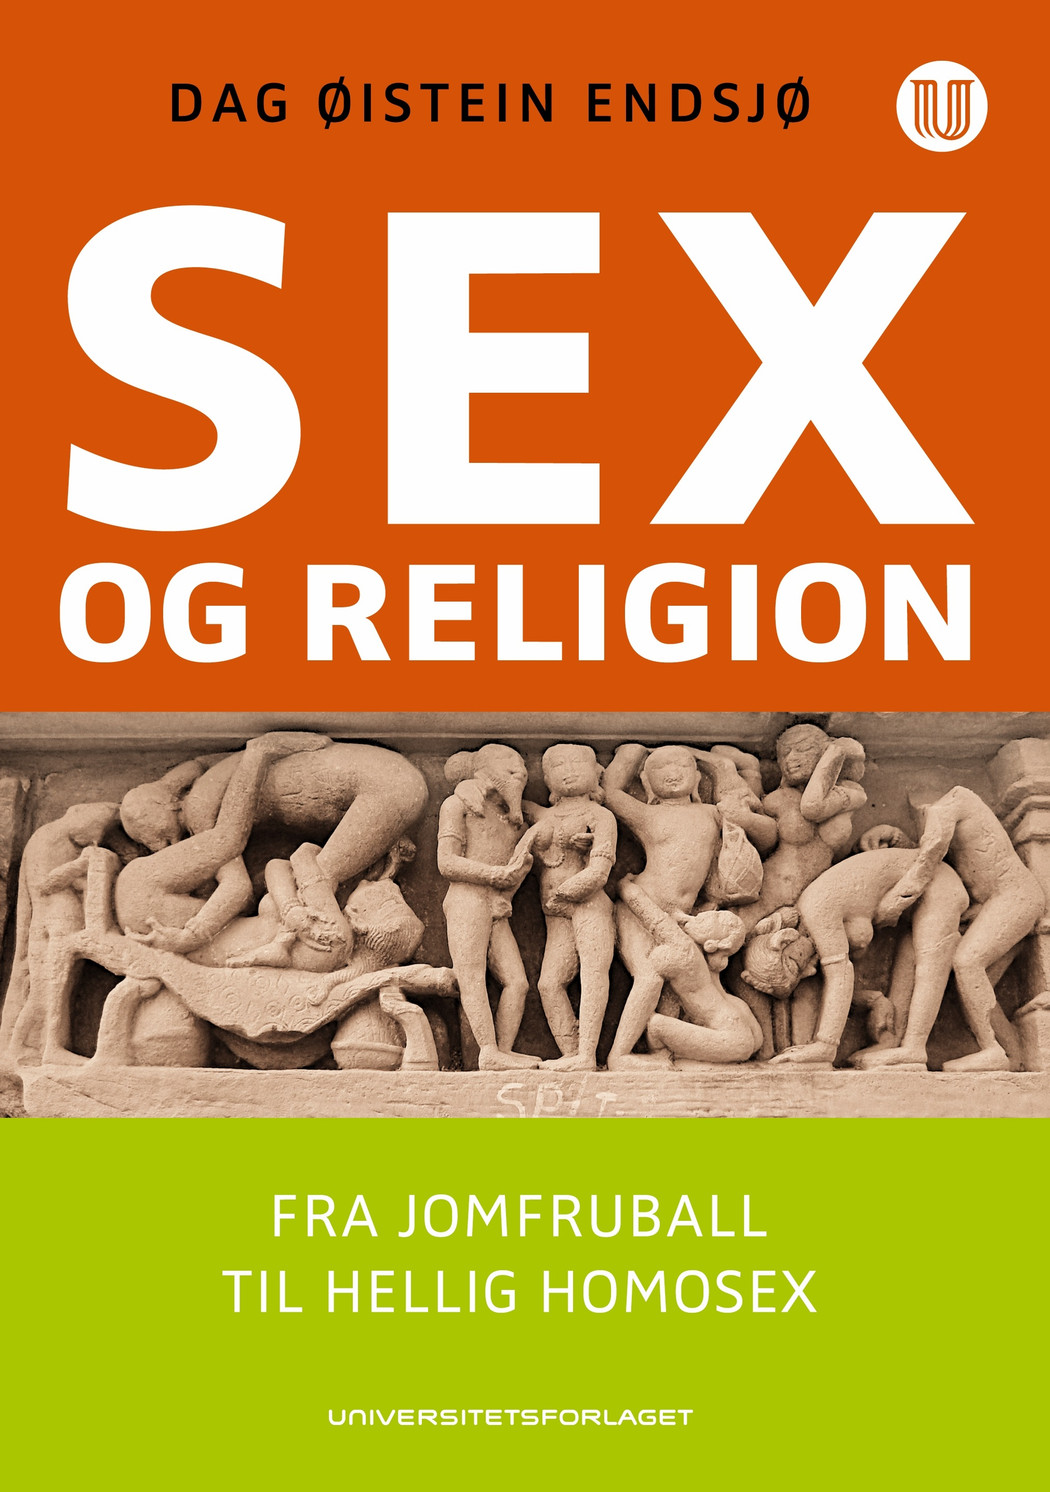 Endsjoe dag oeistein sex and religion